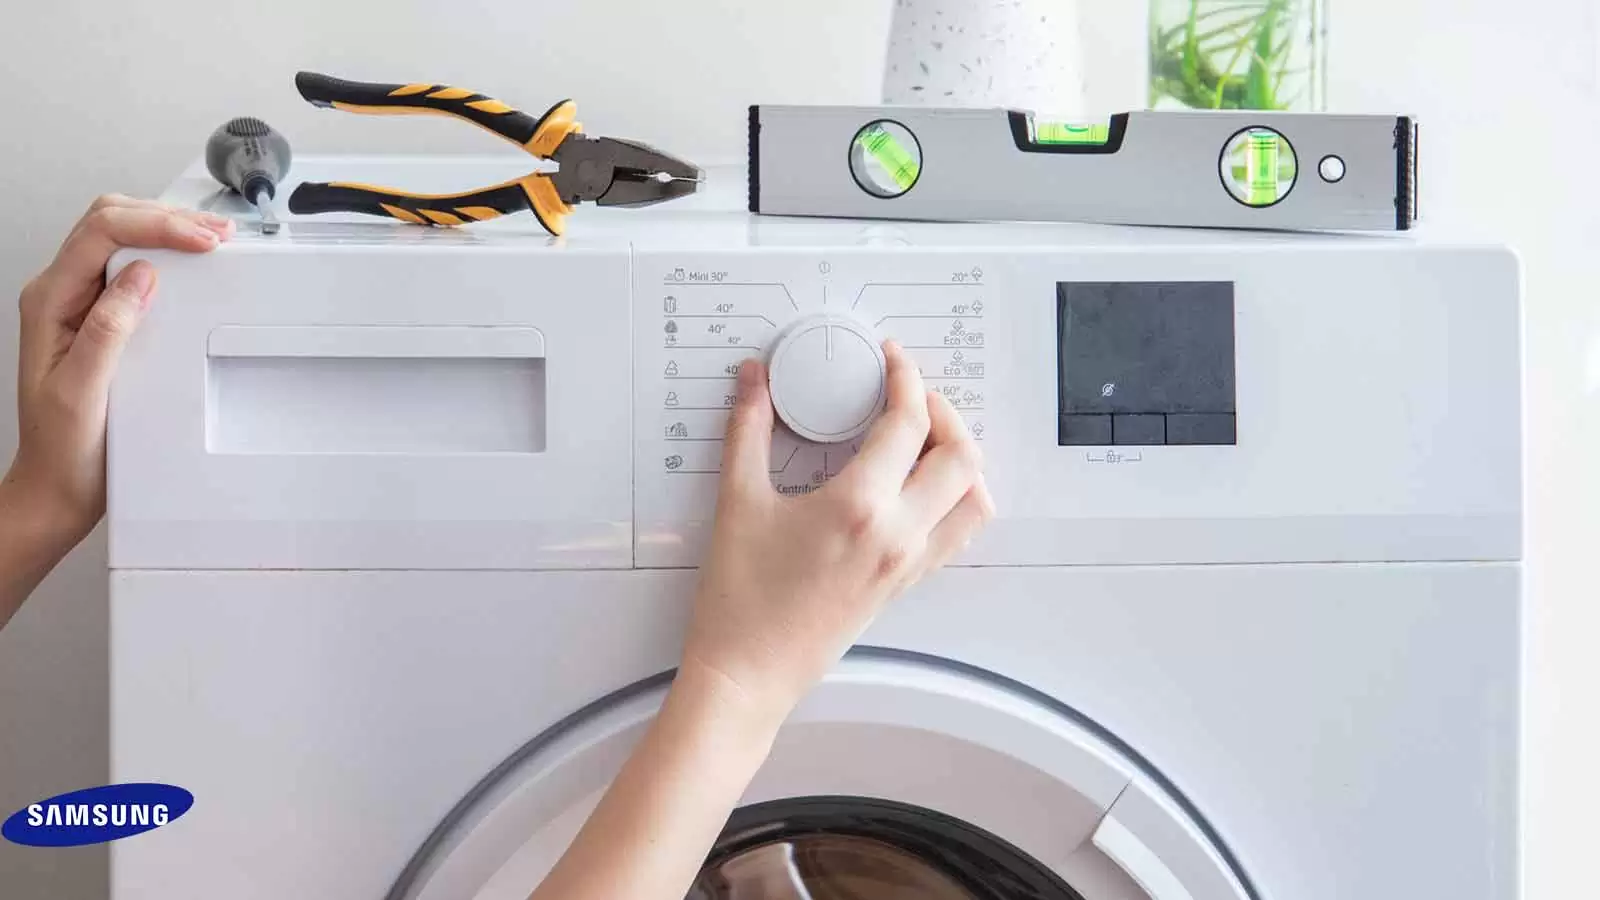 کالیبره کردن ماشین لباسشویی به چه معناست